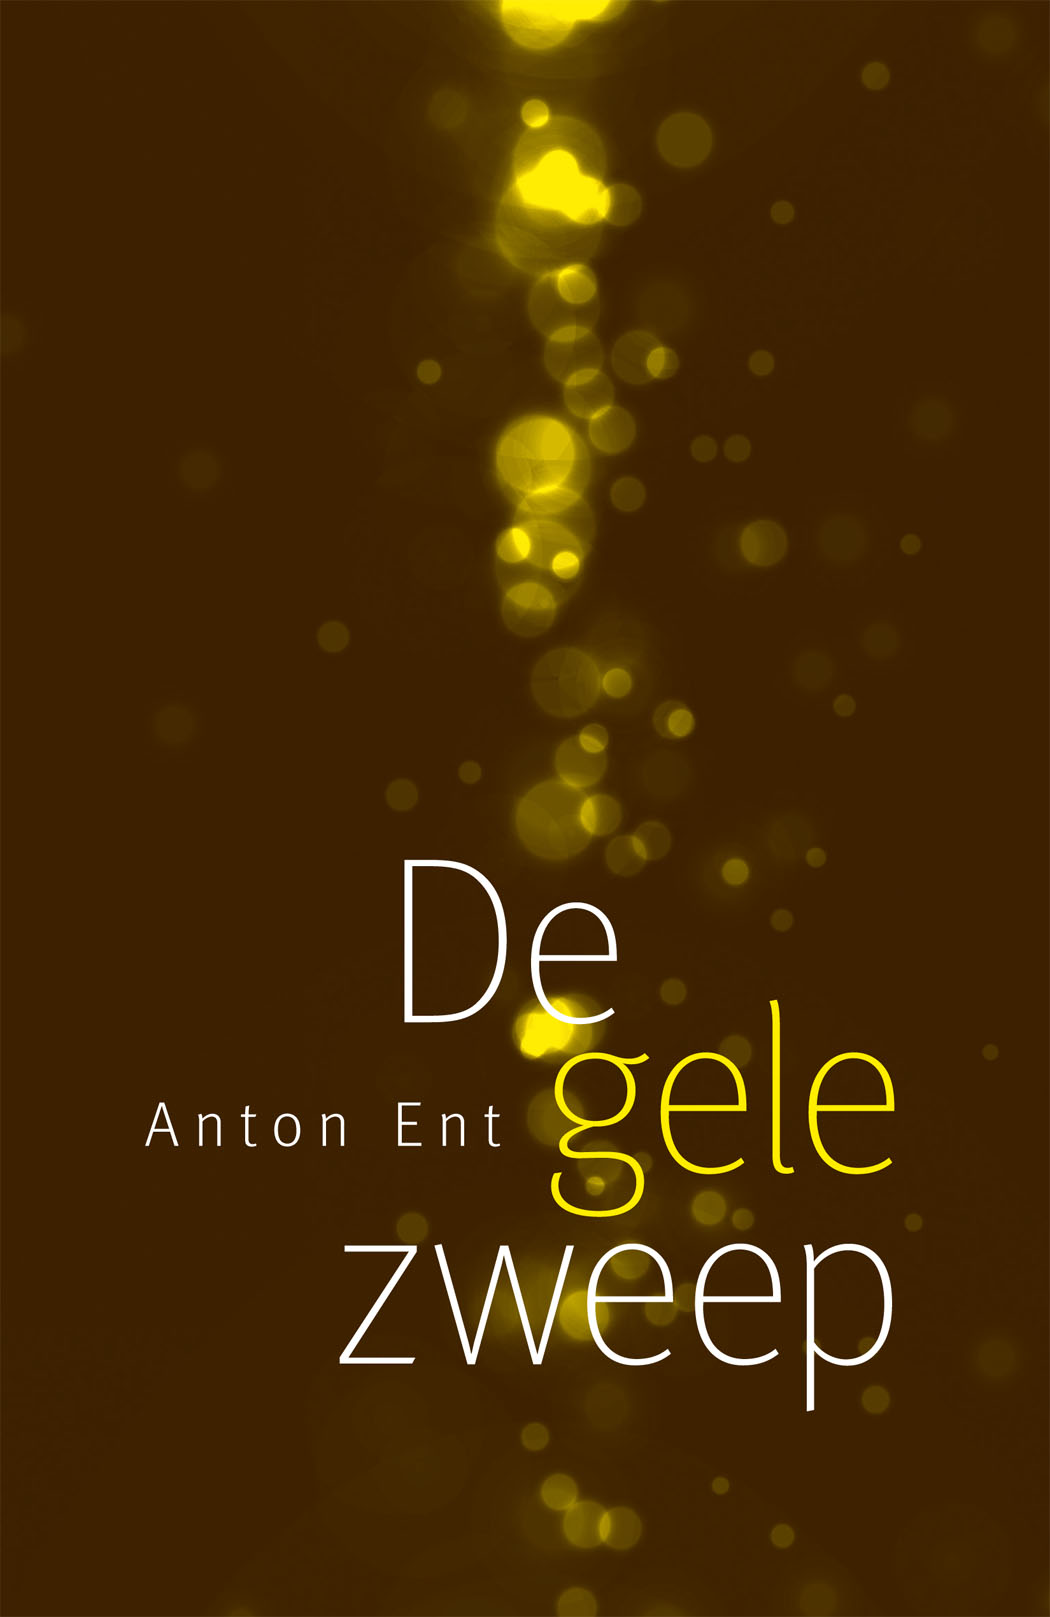 Anton Ent, De gele zweep